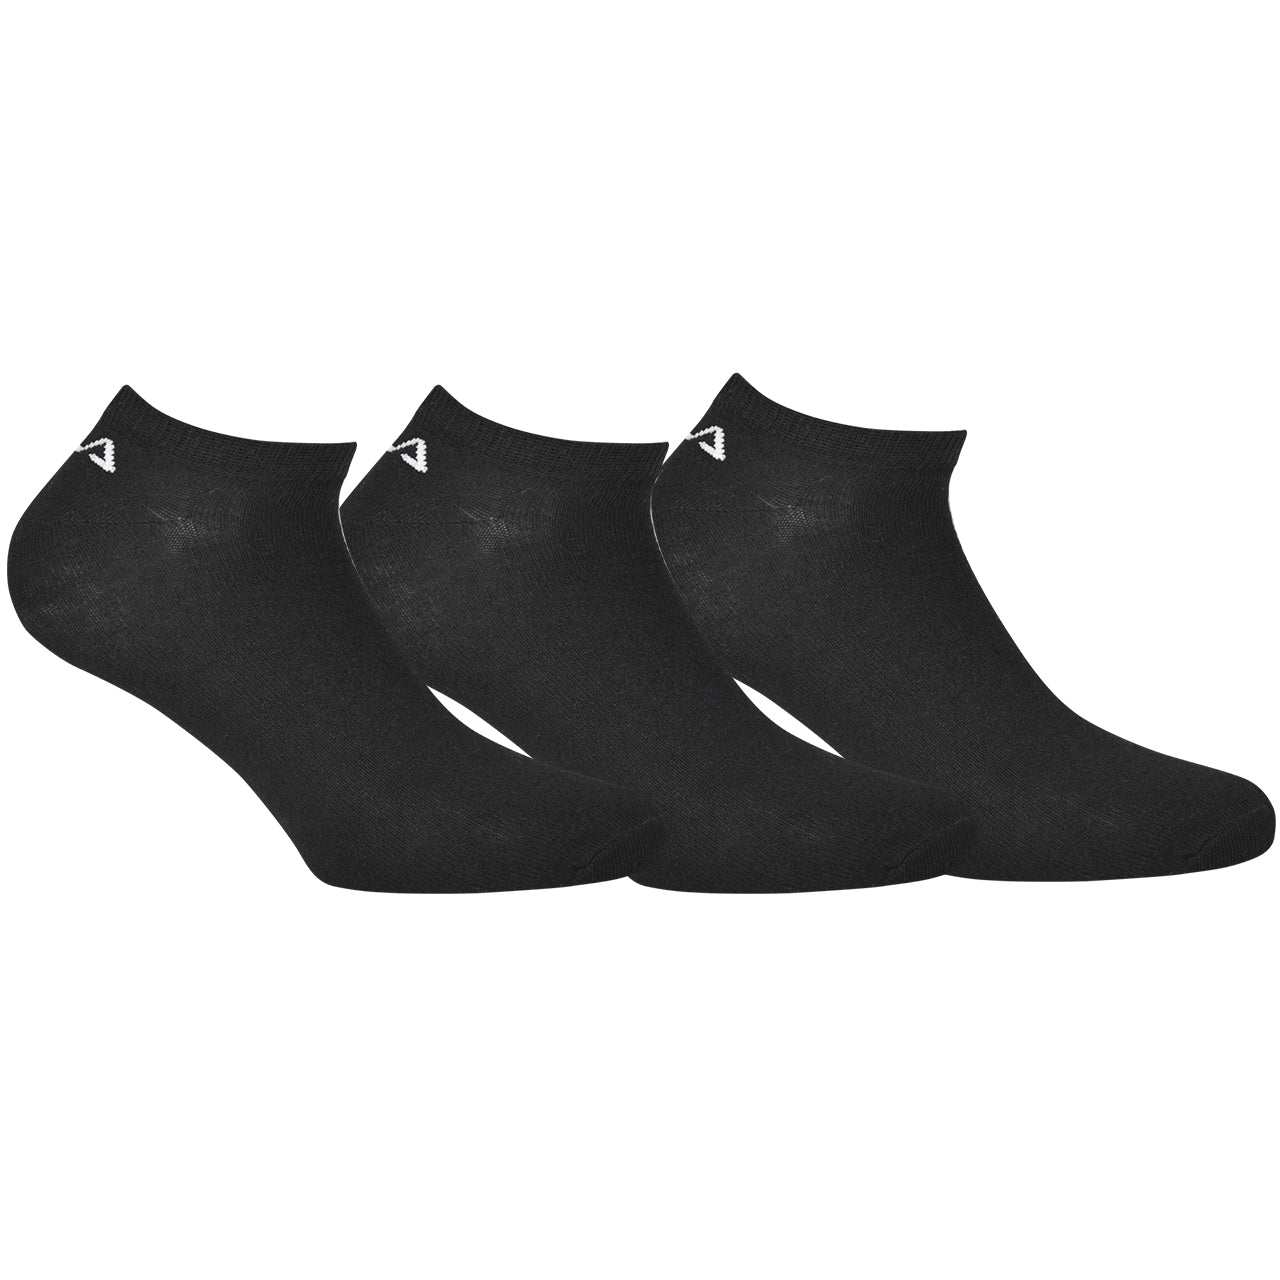 Ankle socks FILA unisex in black invisible